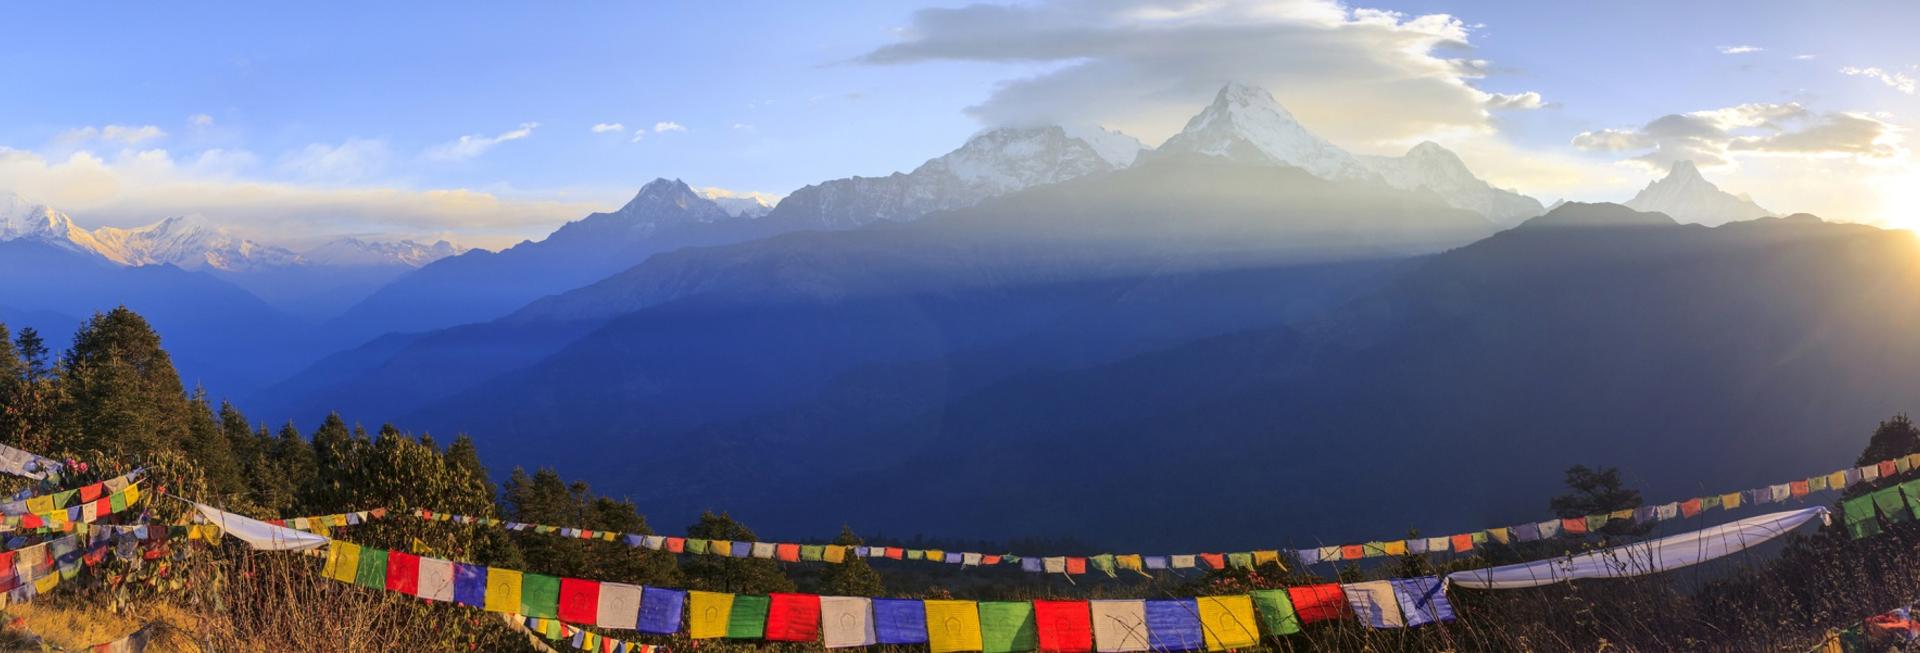 Mt Everest taken from Nargakot, Nepal